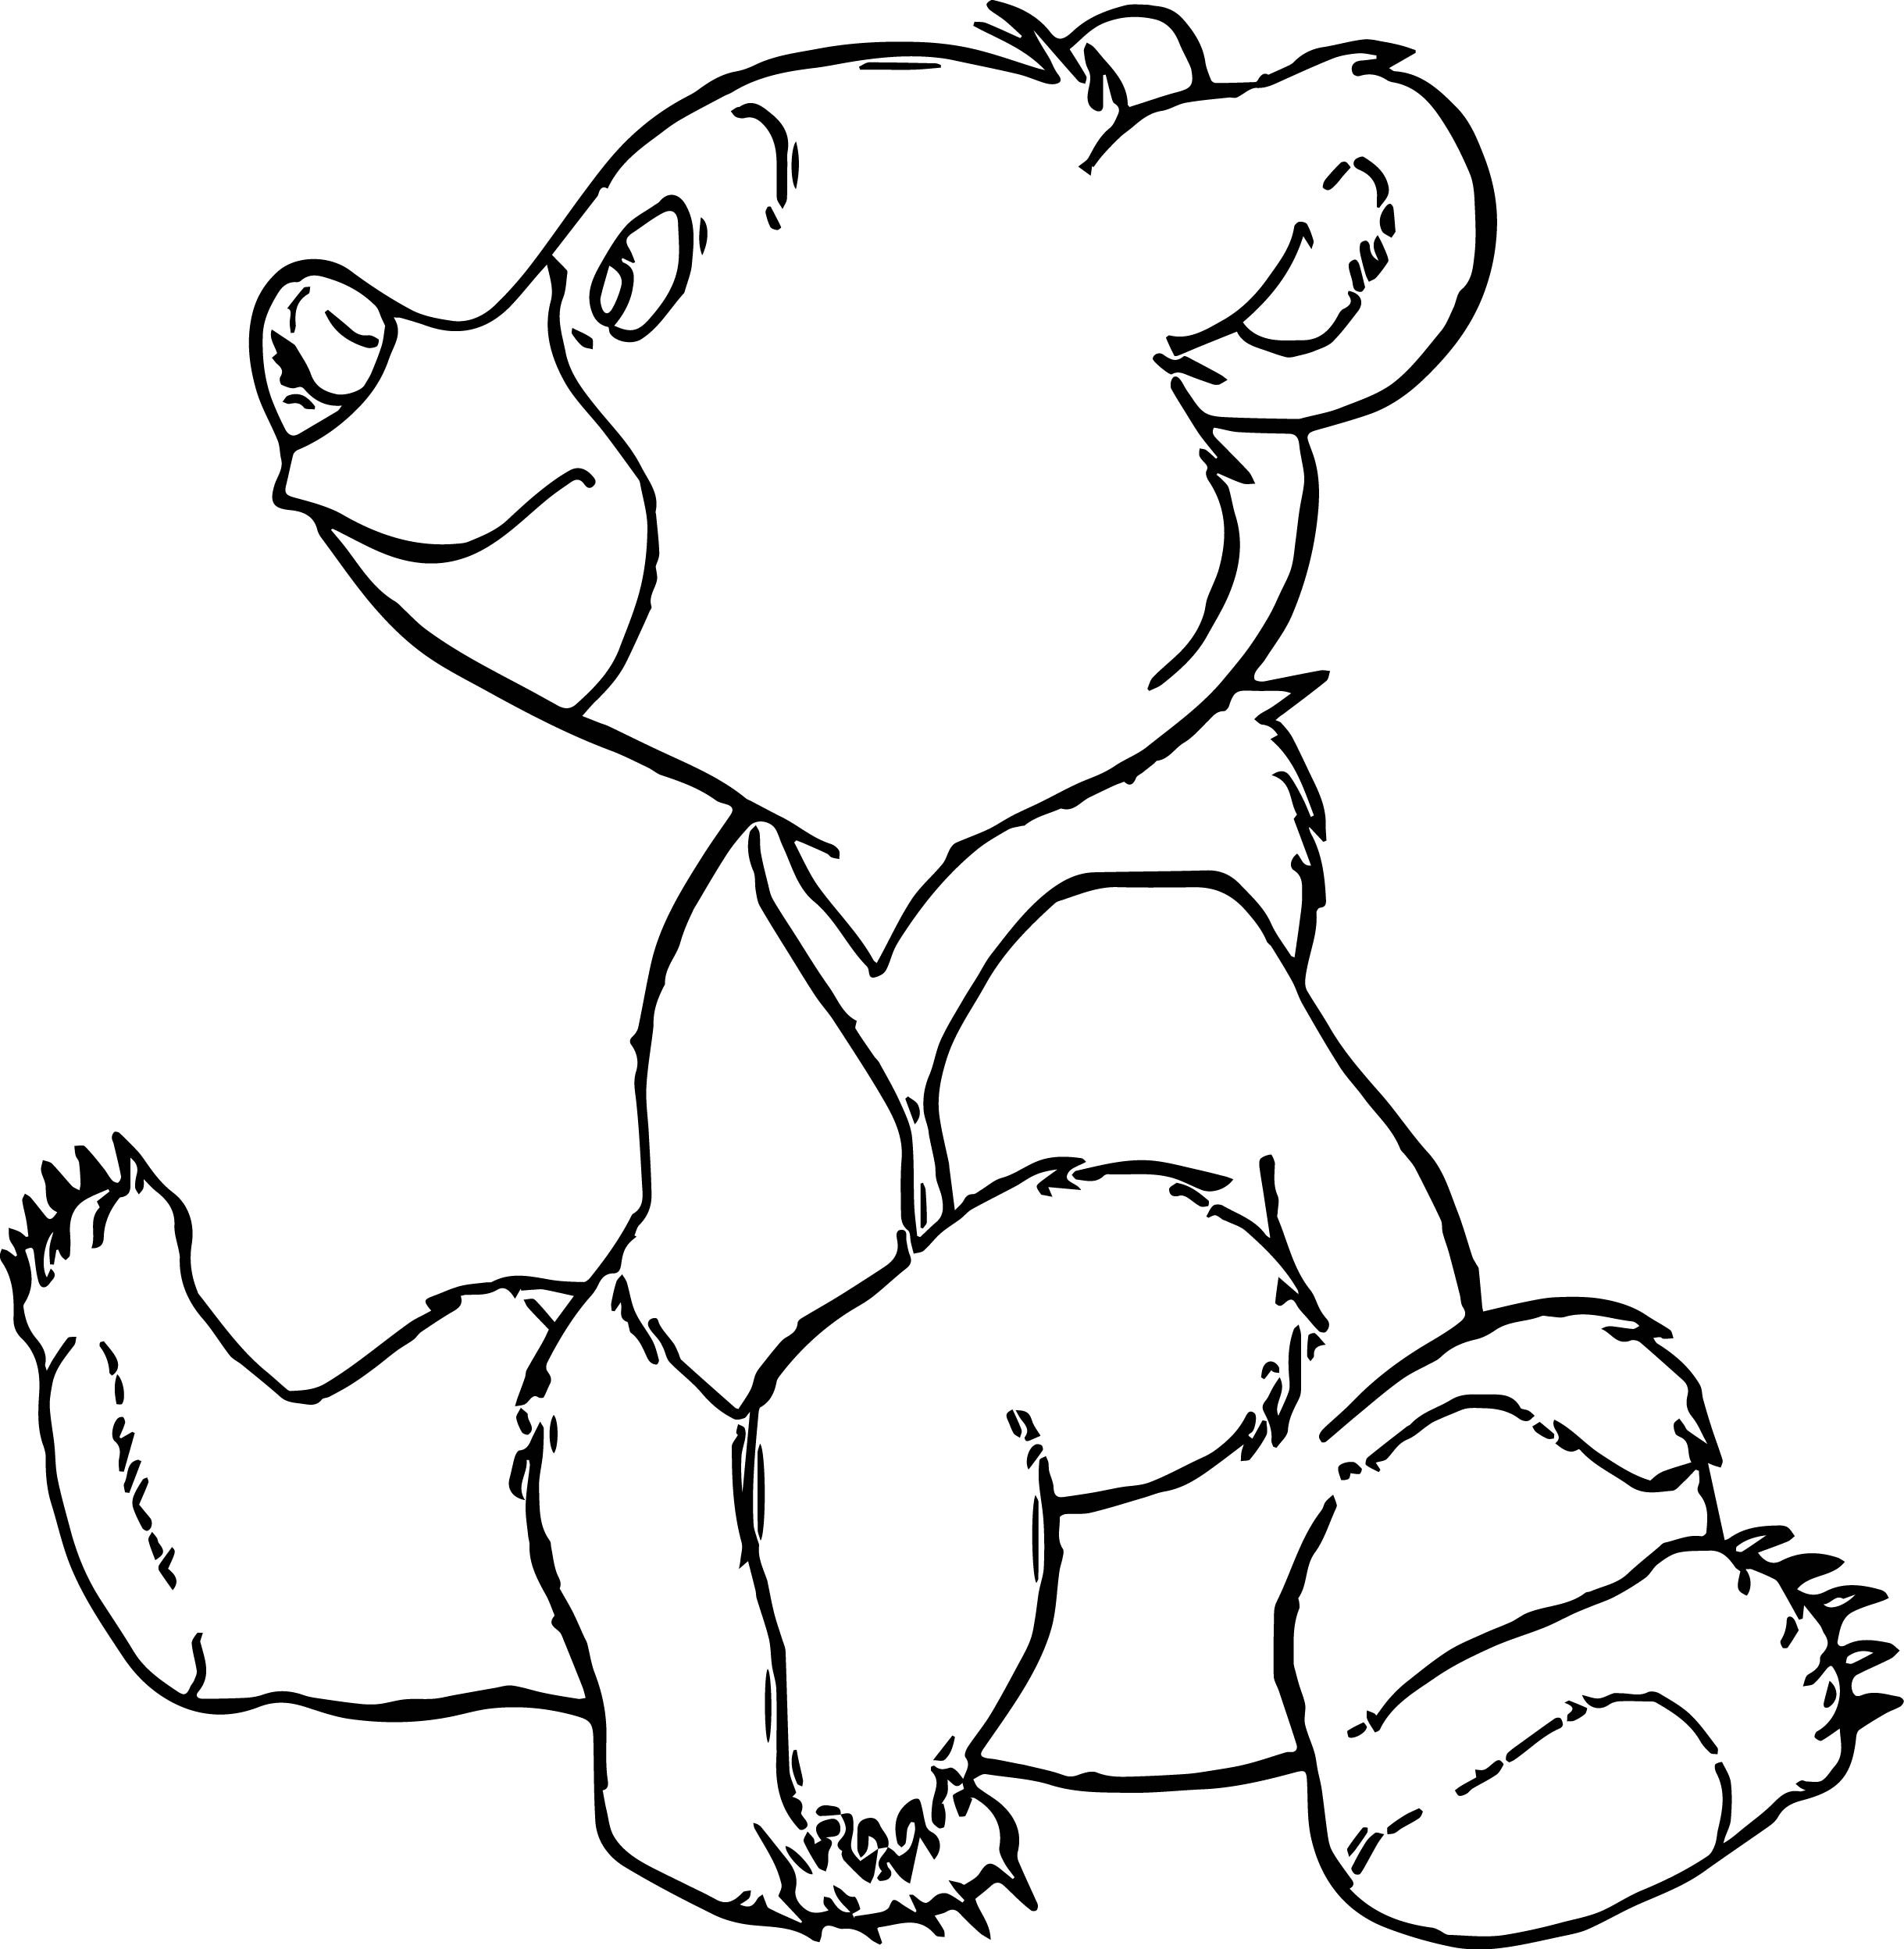 Раскраска медведь для детей 2 3 лет